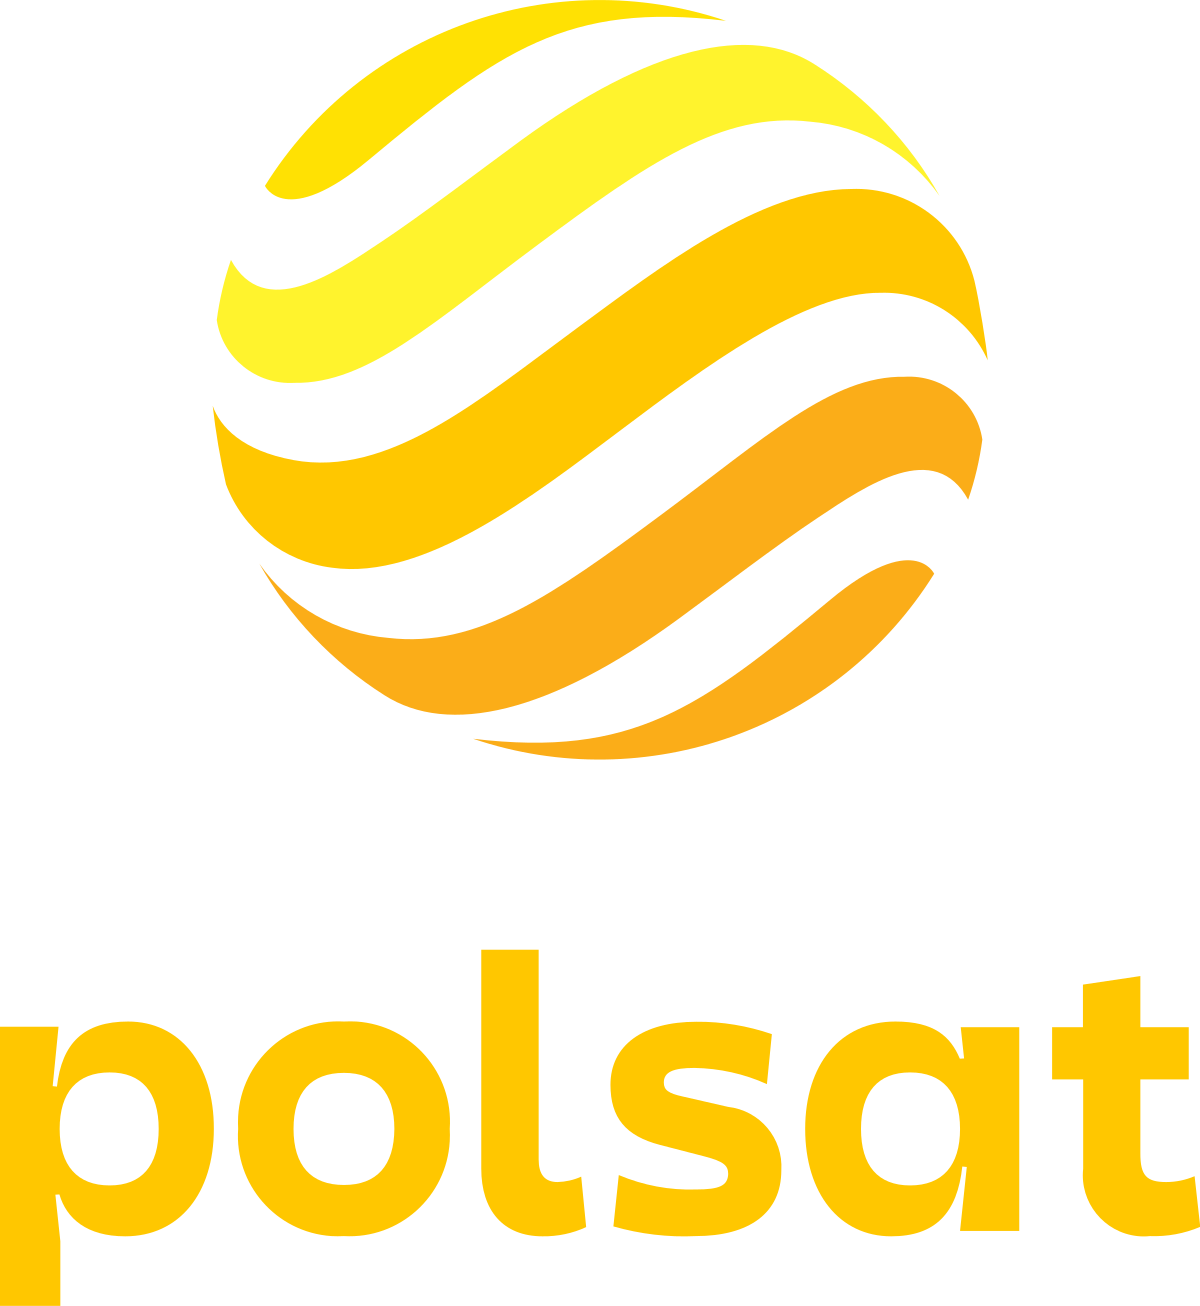 Polsat.pl